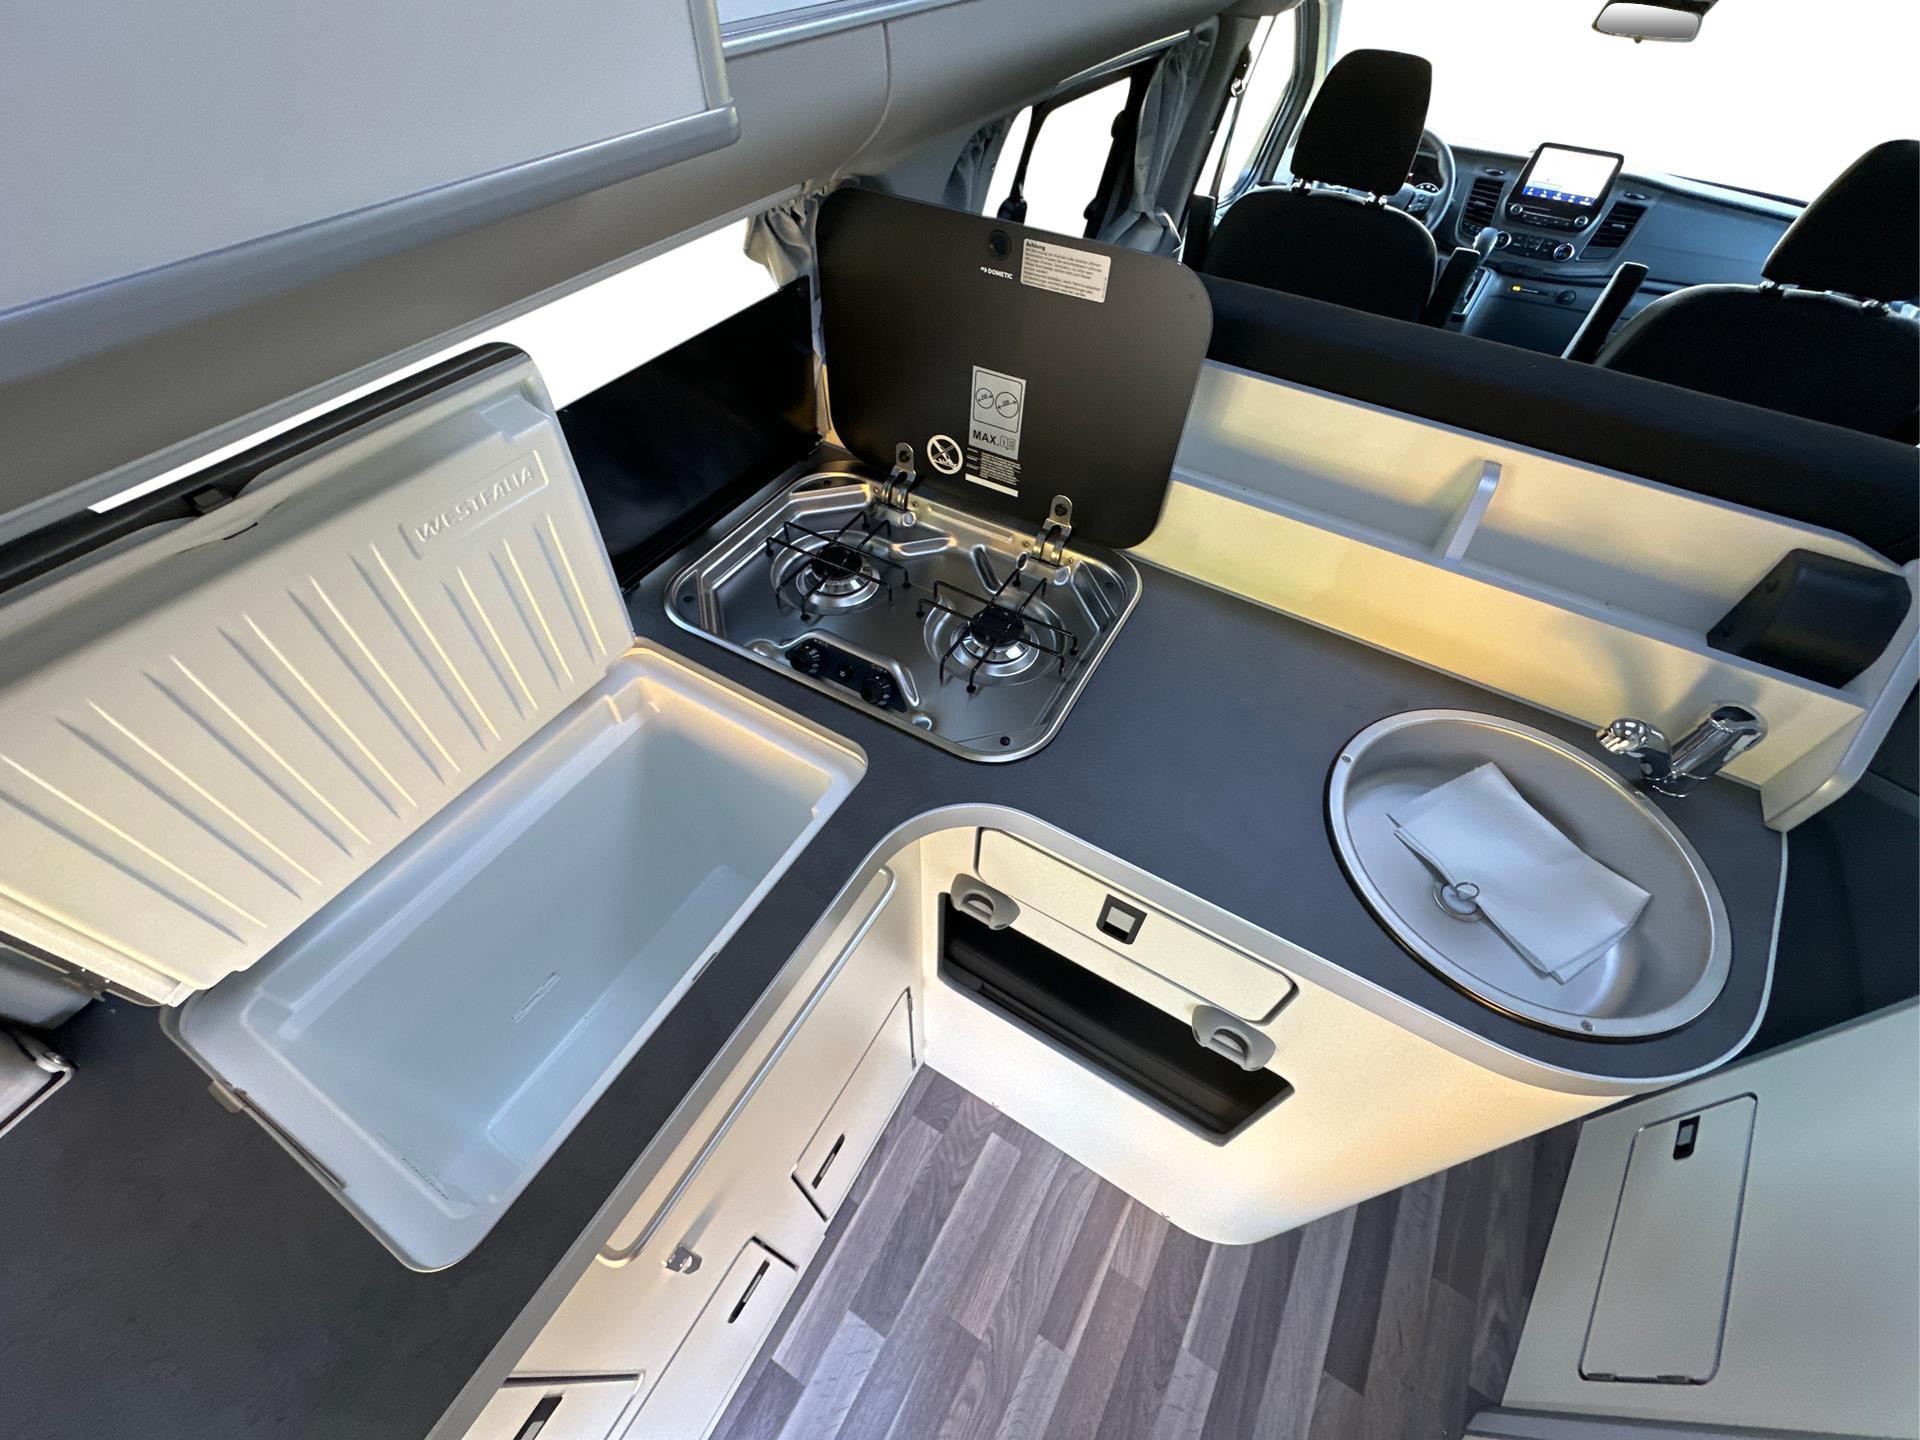 Ford Transit Custom Camping Zubehör: Zusatz LEDs, Dachträger,  Zweitbatterie, Reifen, Innenausbau